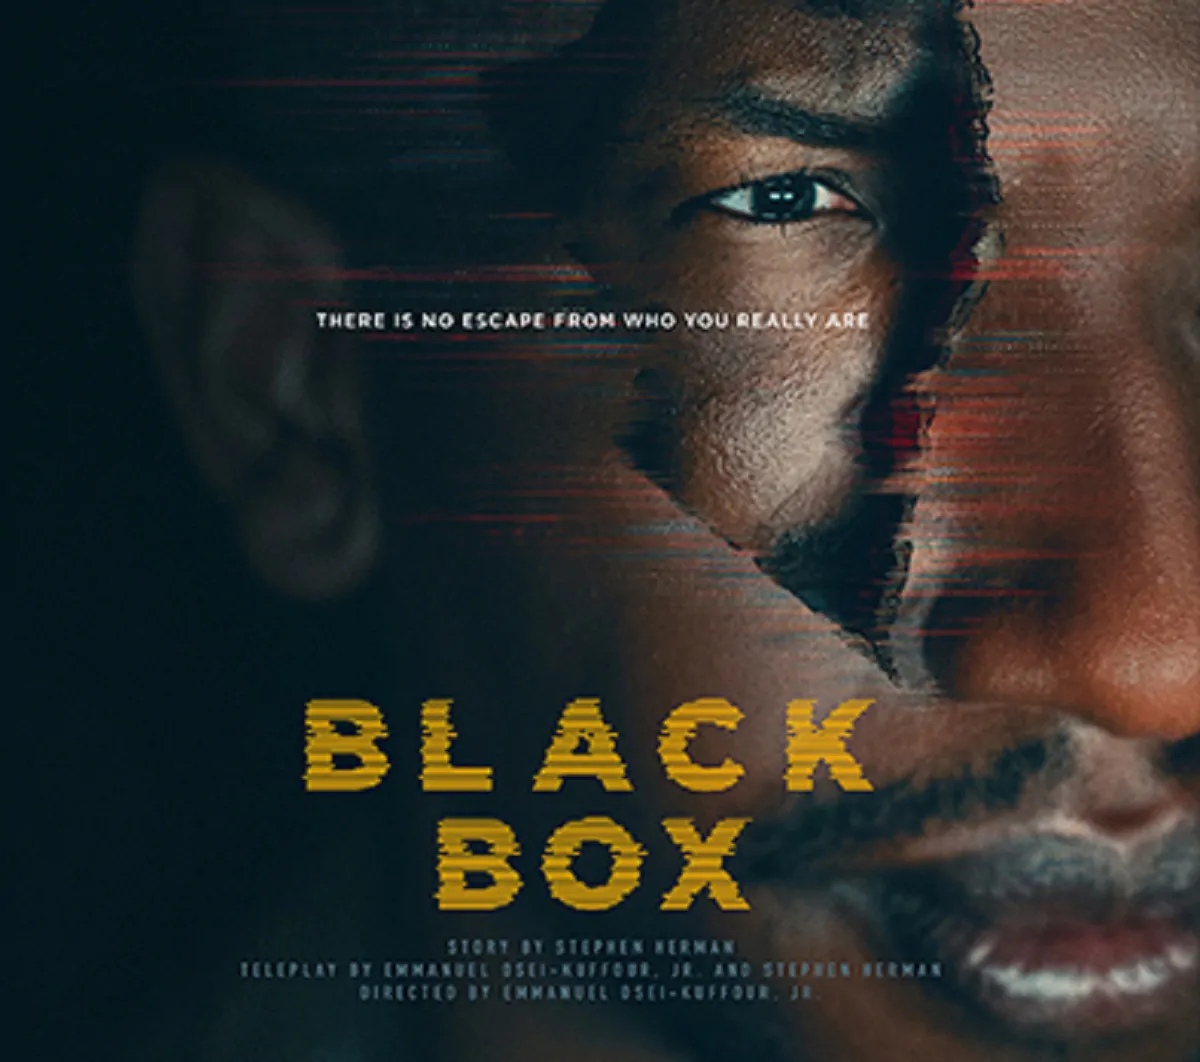 black box recensione 3